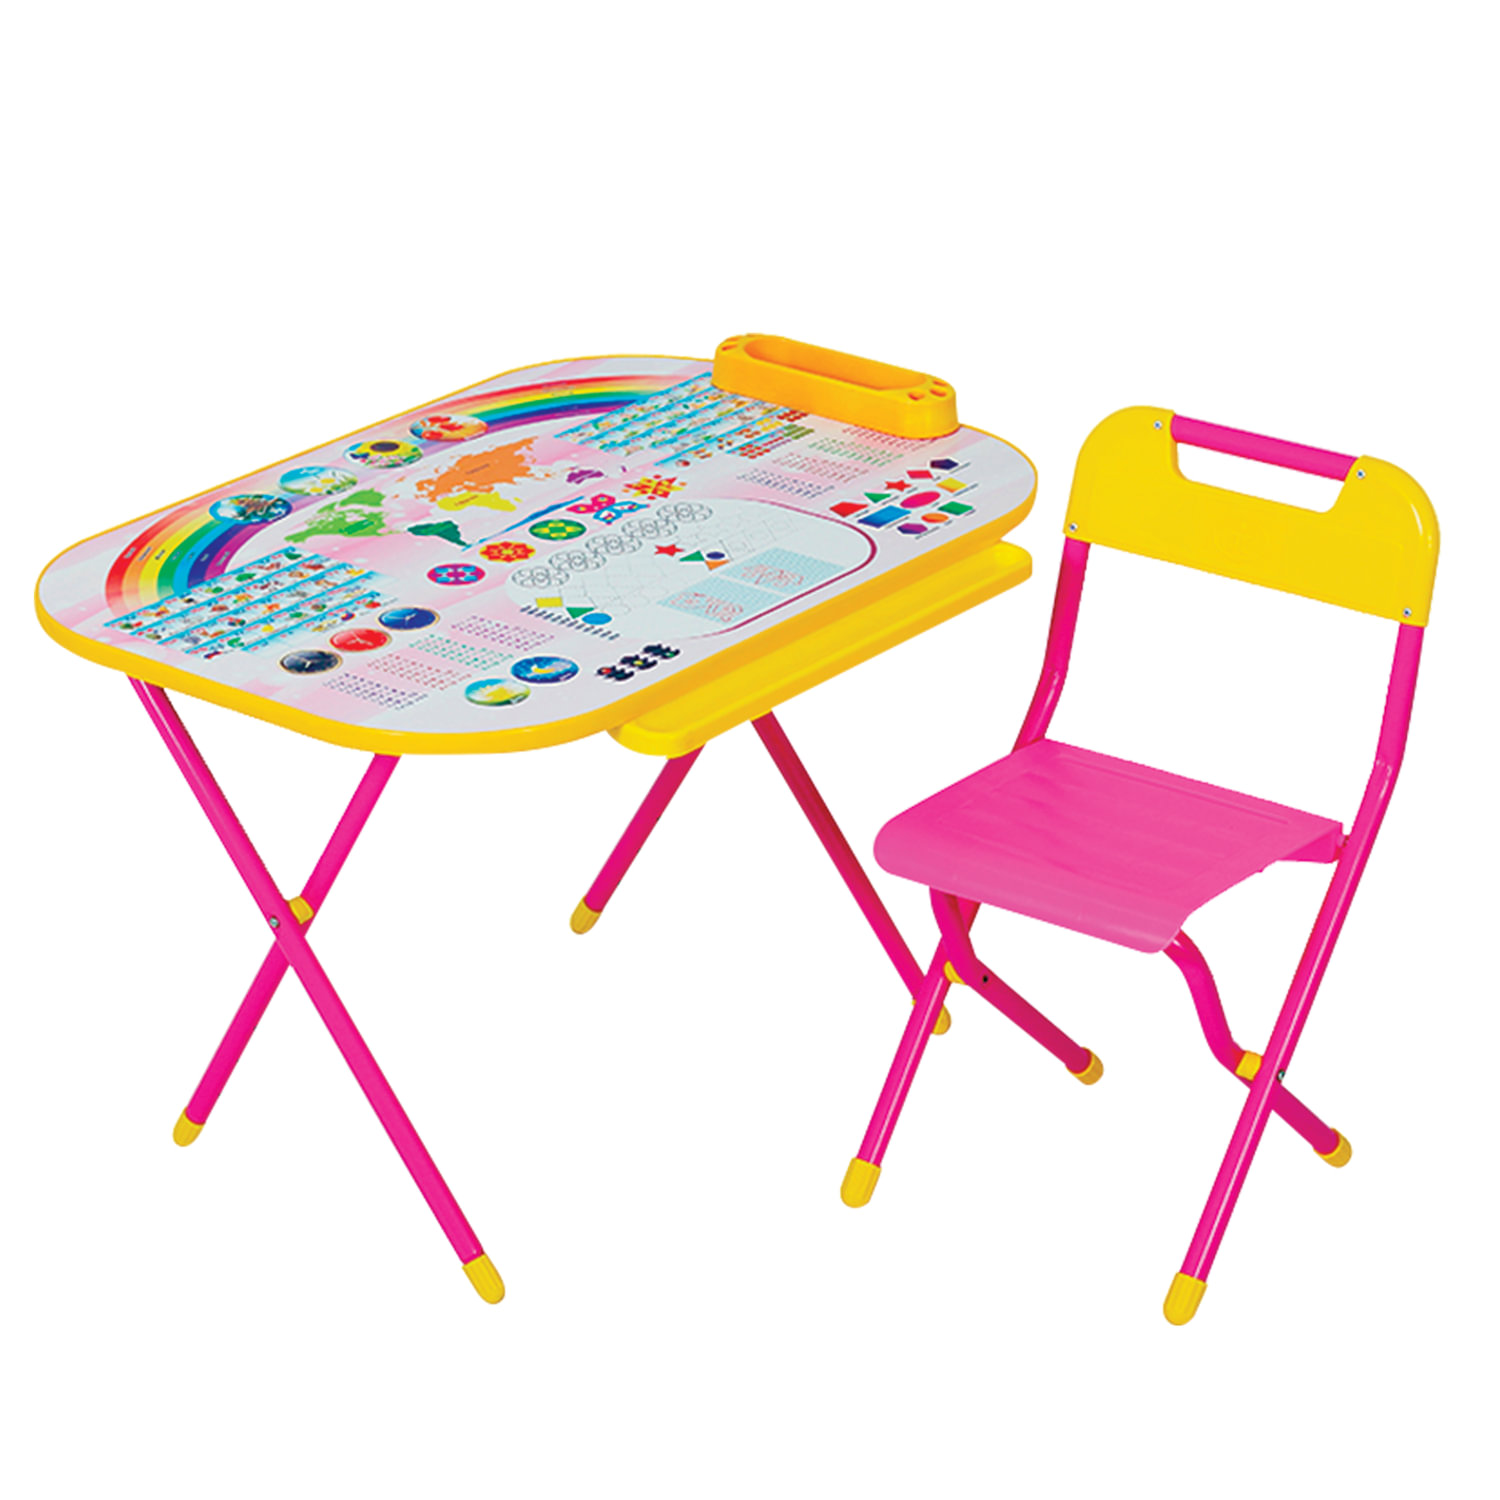 столик детский со стулом складной